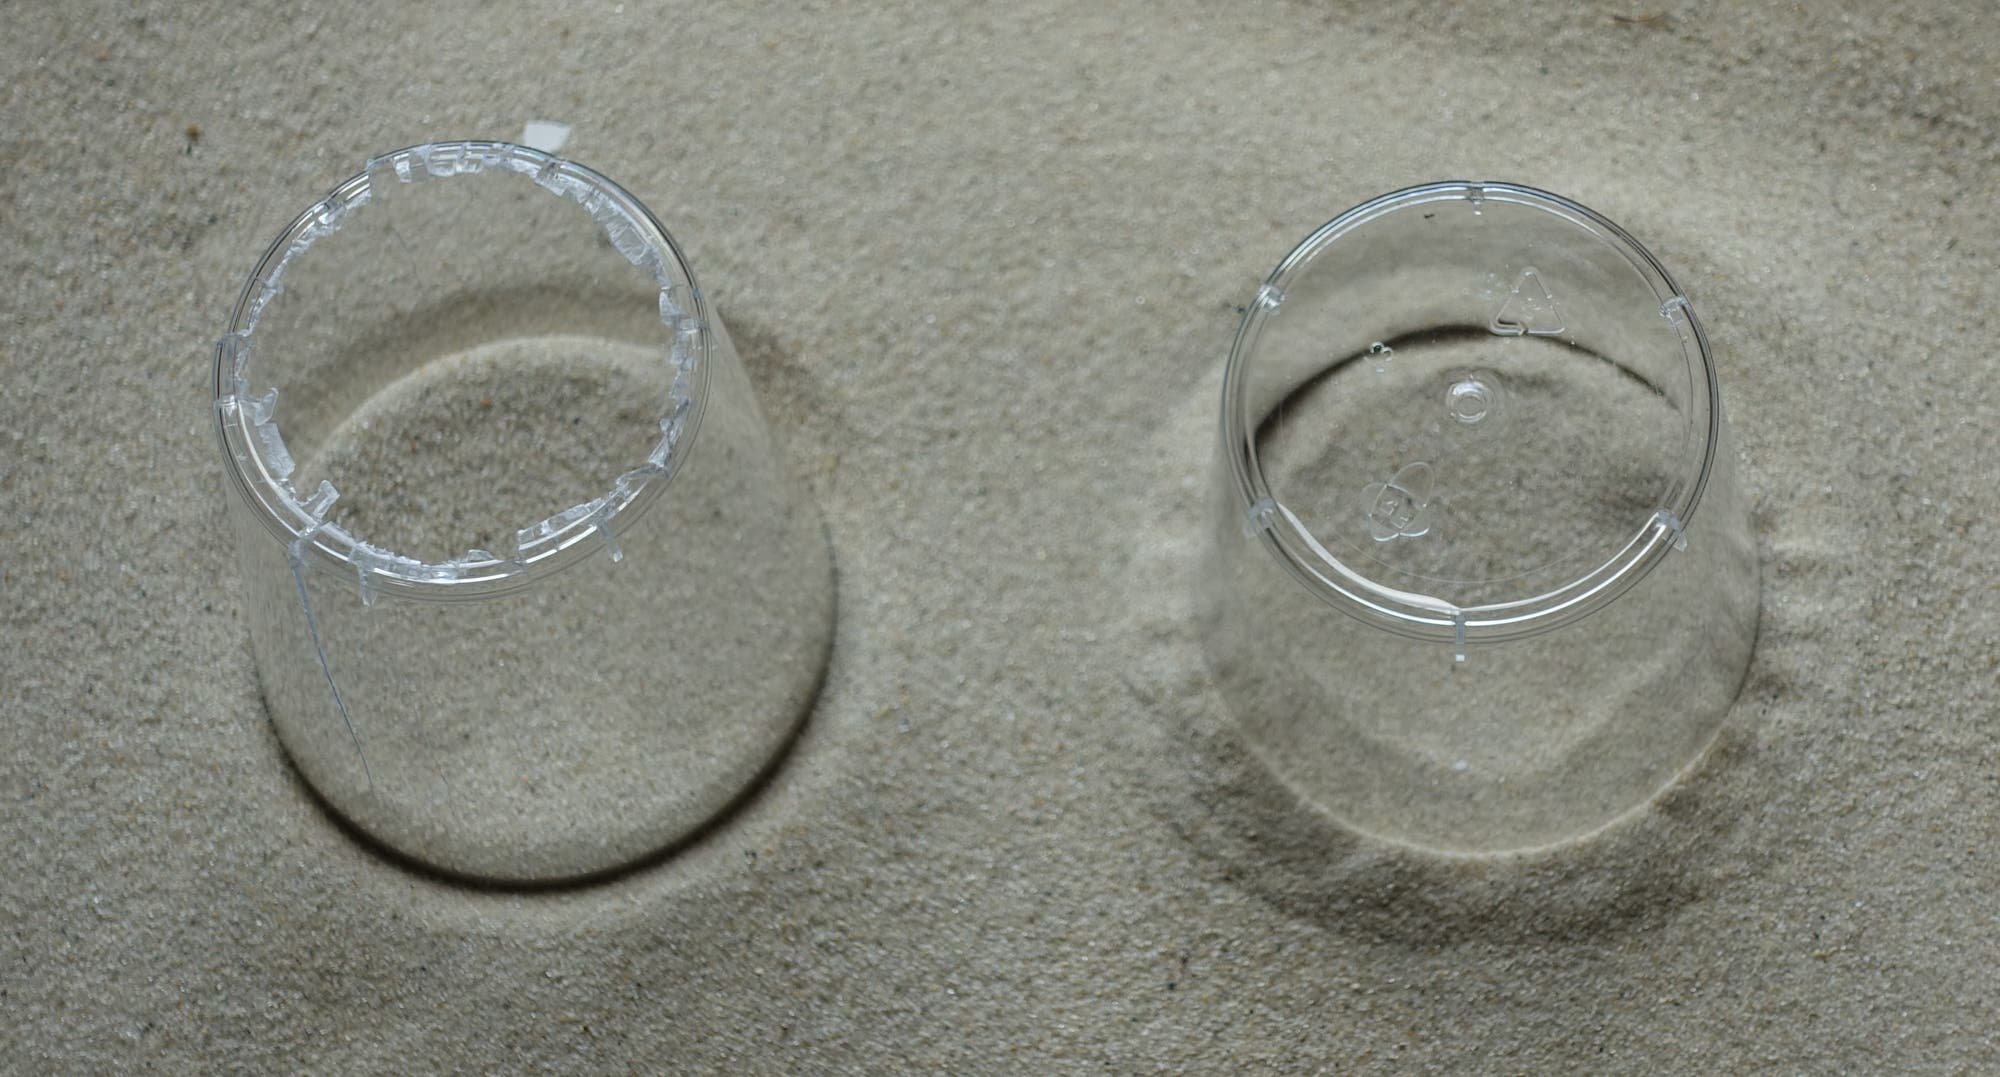 ein Plastikbecher ohne und ein Becher mit Boden sind nebeneinander in Sand gedrückt